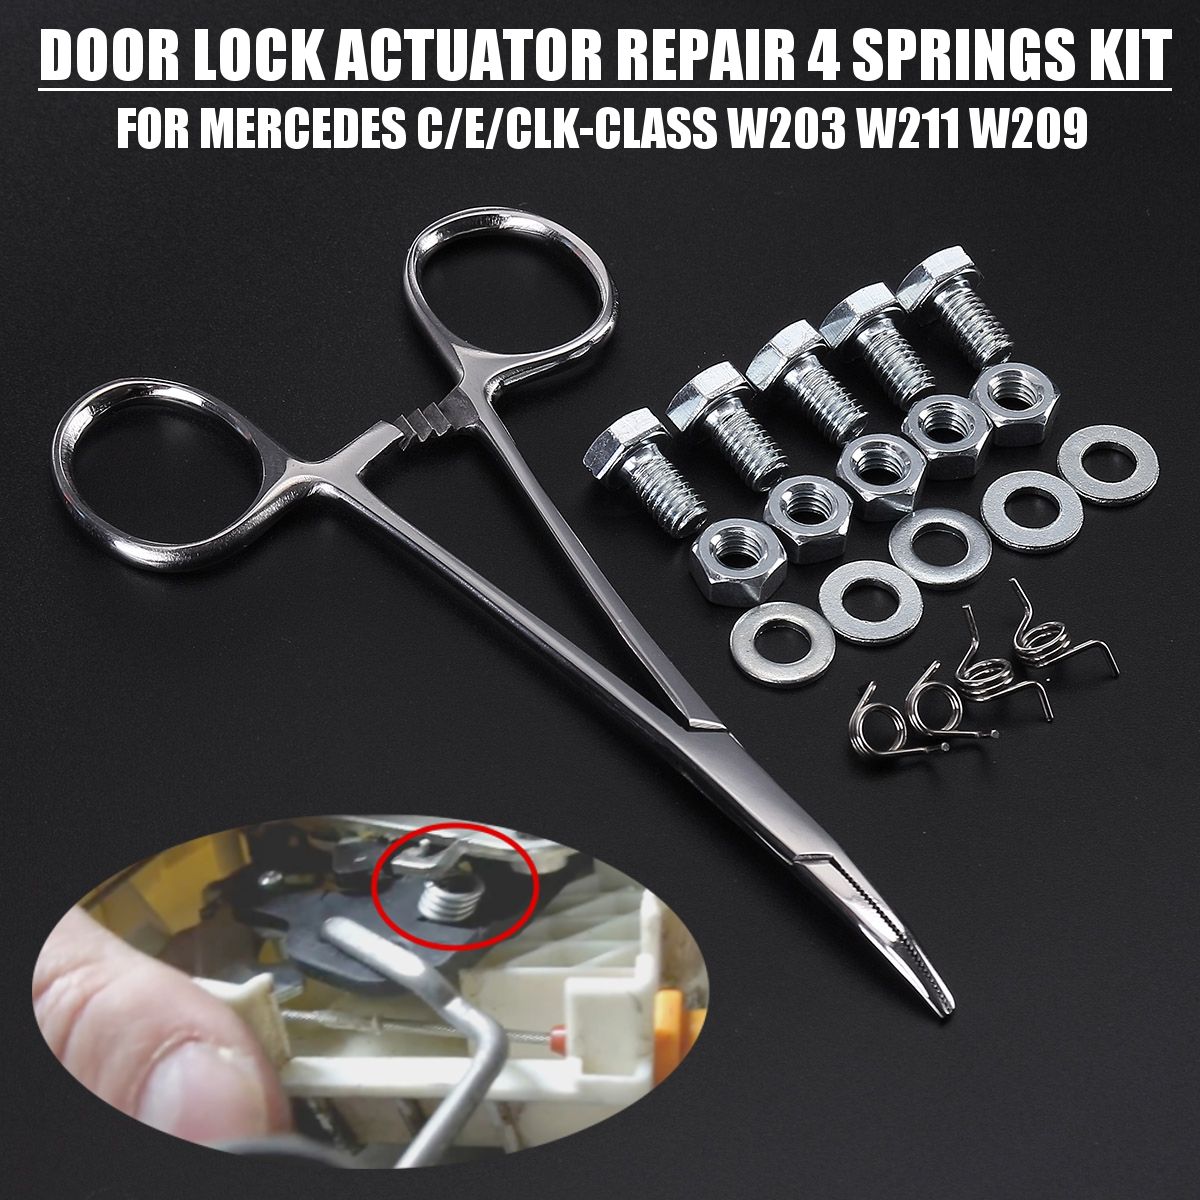 Door-Lock-Actuator-Repair-Pliers-Tool-With-4-Springs-Kit-For-Mercedes-CE-Class-U2S4-W211-Door-Lock-P-1639416